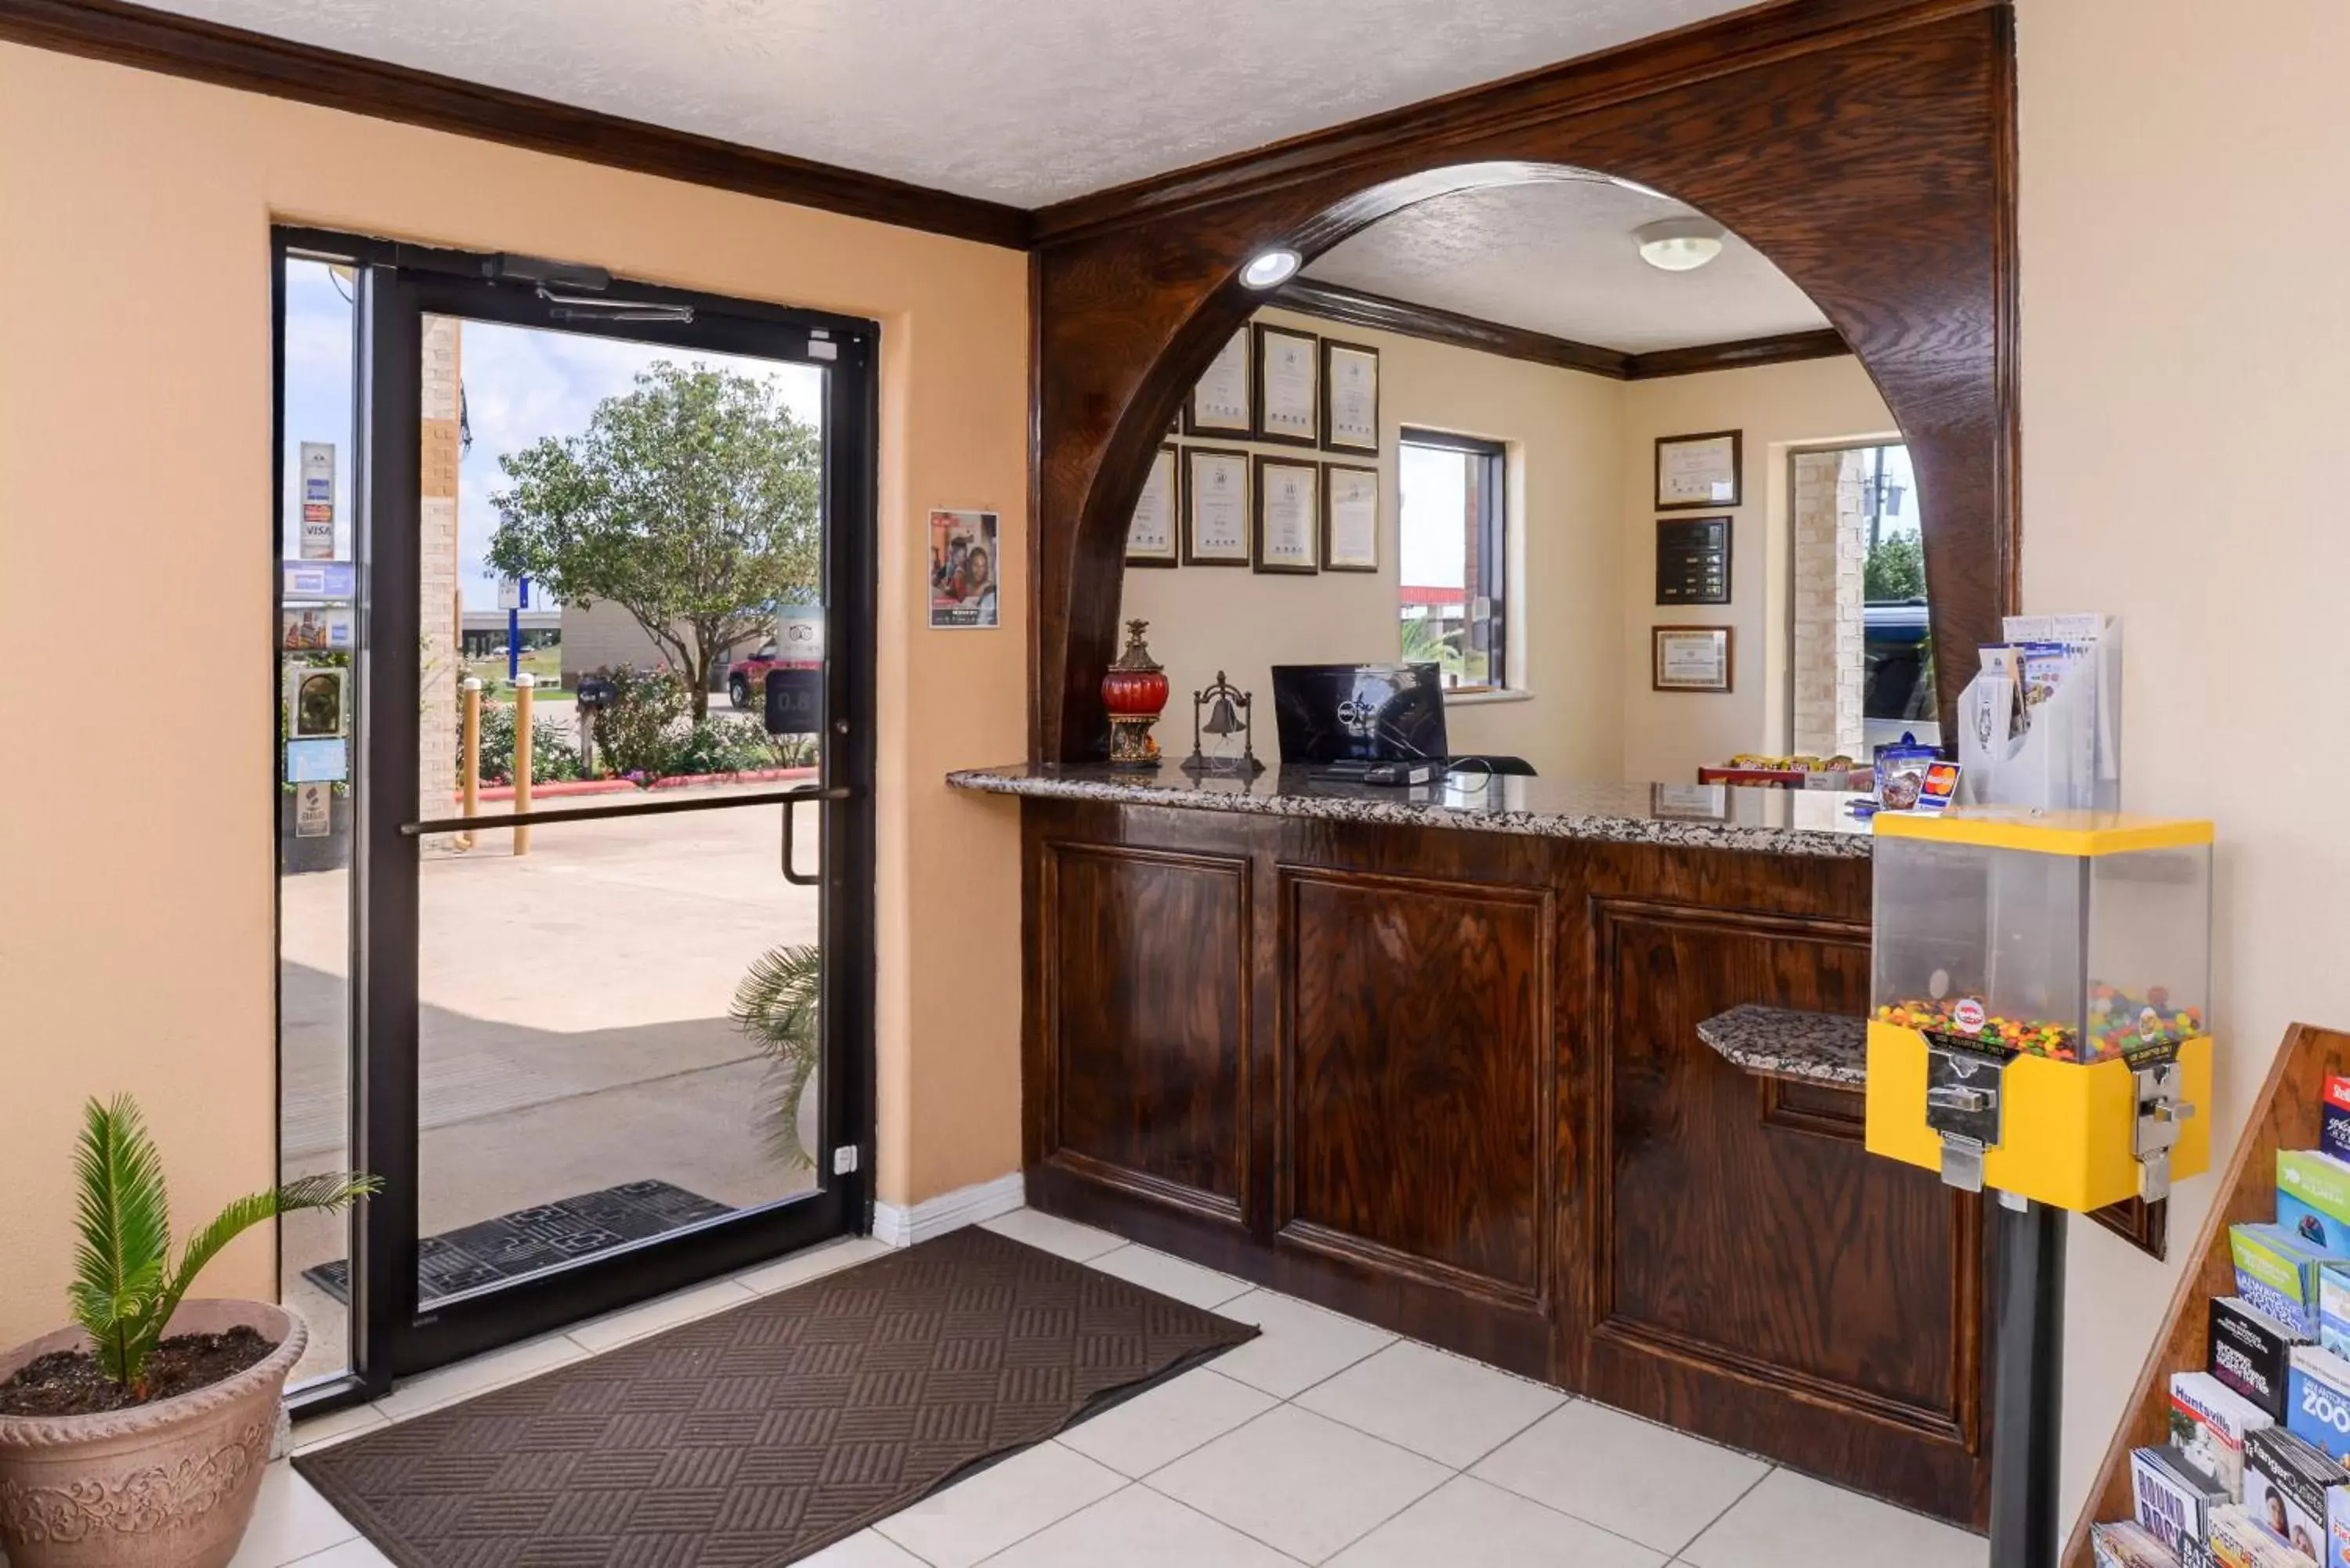 Lobby or reception in Americas Best Value Inn & Suites Waller Prairie View